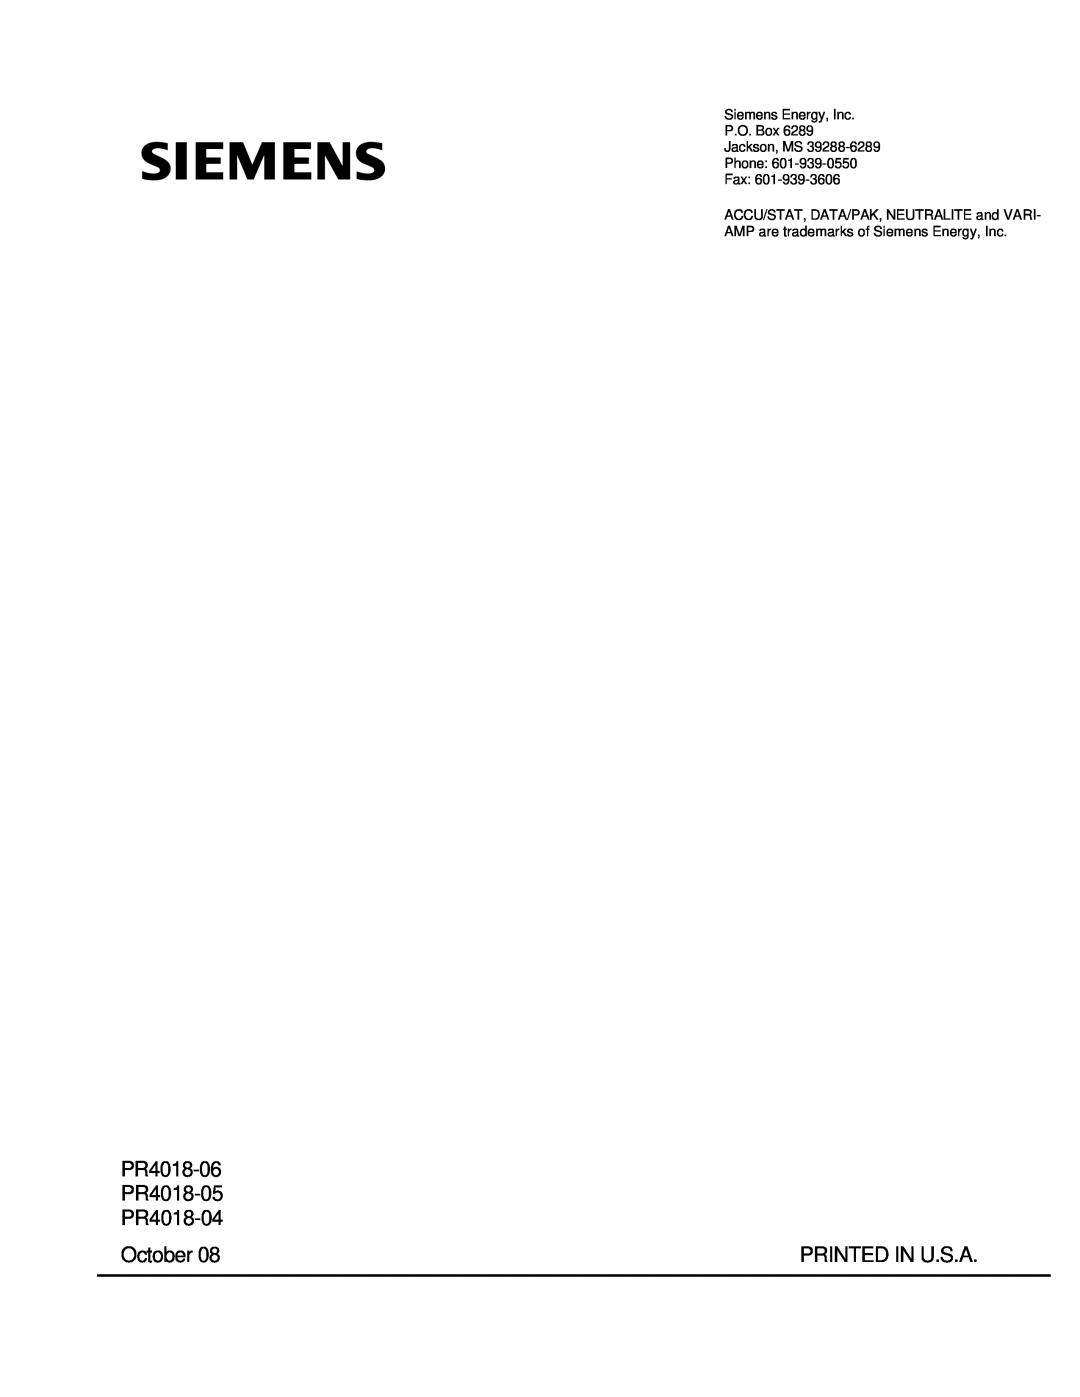 Siemens 21-115532-001 PR4018-06 PR4018-05 PR4018-04, October, Printed In U.S.A, AMP are trademarks of Siemens Energy, Inc 